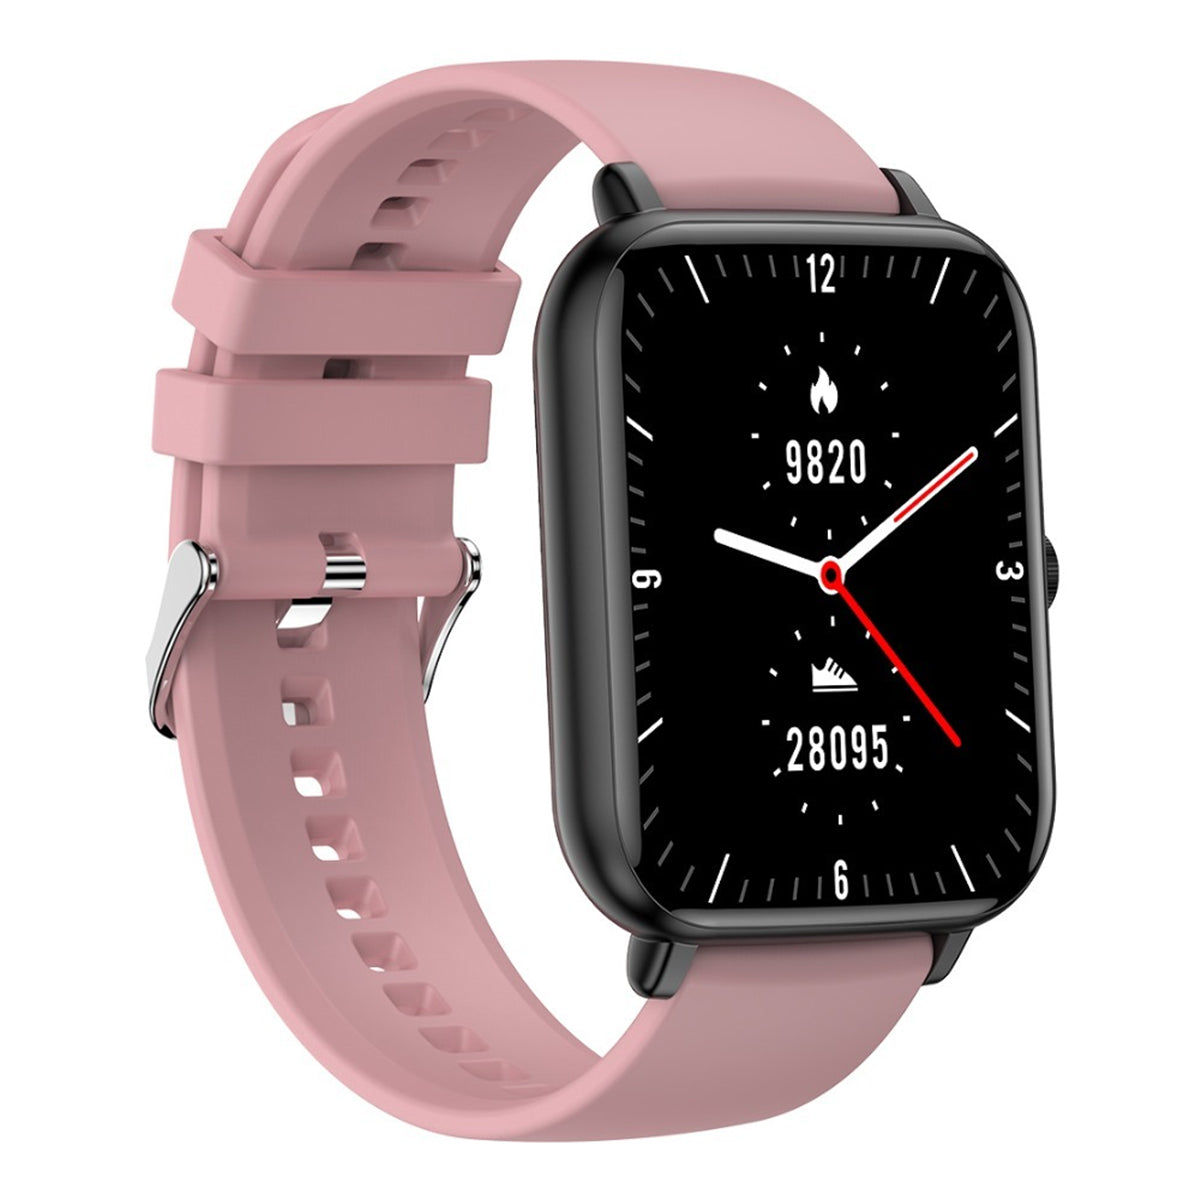 Fralugio Smart Watch Reloj Inteligente A8 Full Touch Ips Hd